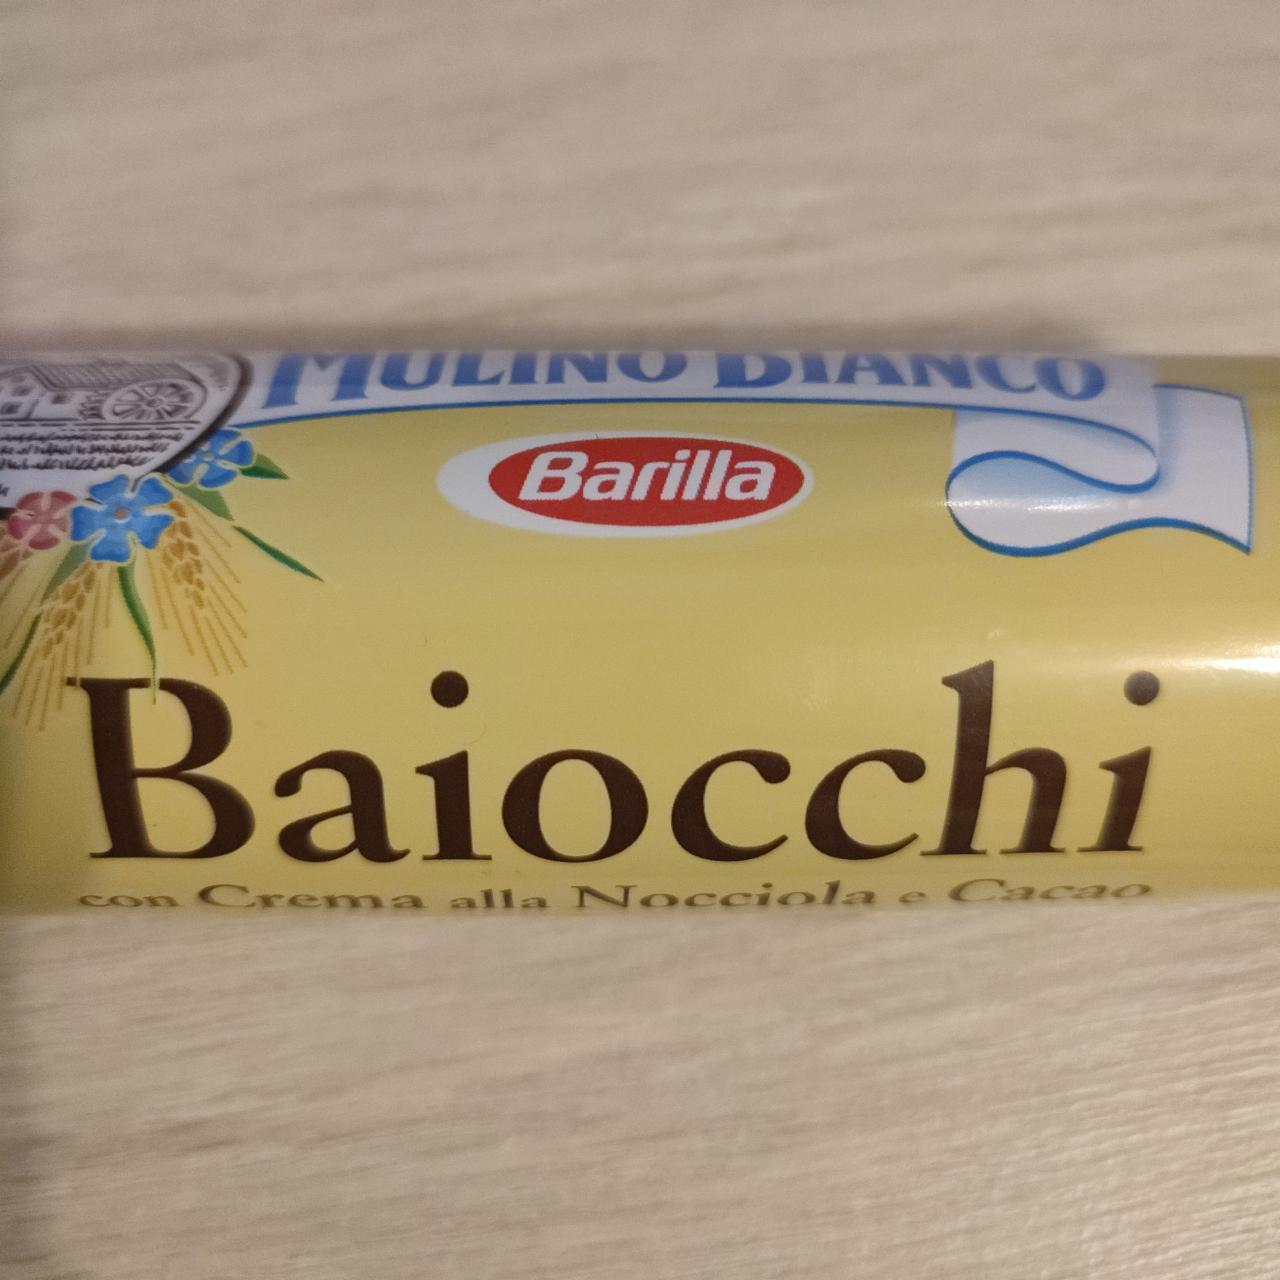 Фото - Печенье сахарное с какао-ореховым кремом Baiocchi Baiocchi con Crema alla Nocciola e Cacao Mulino Bianco